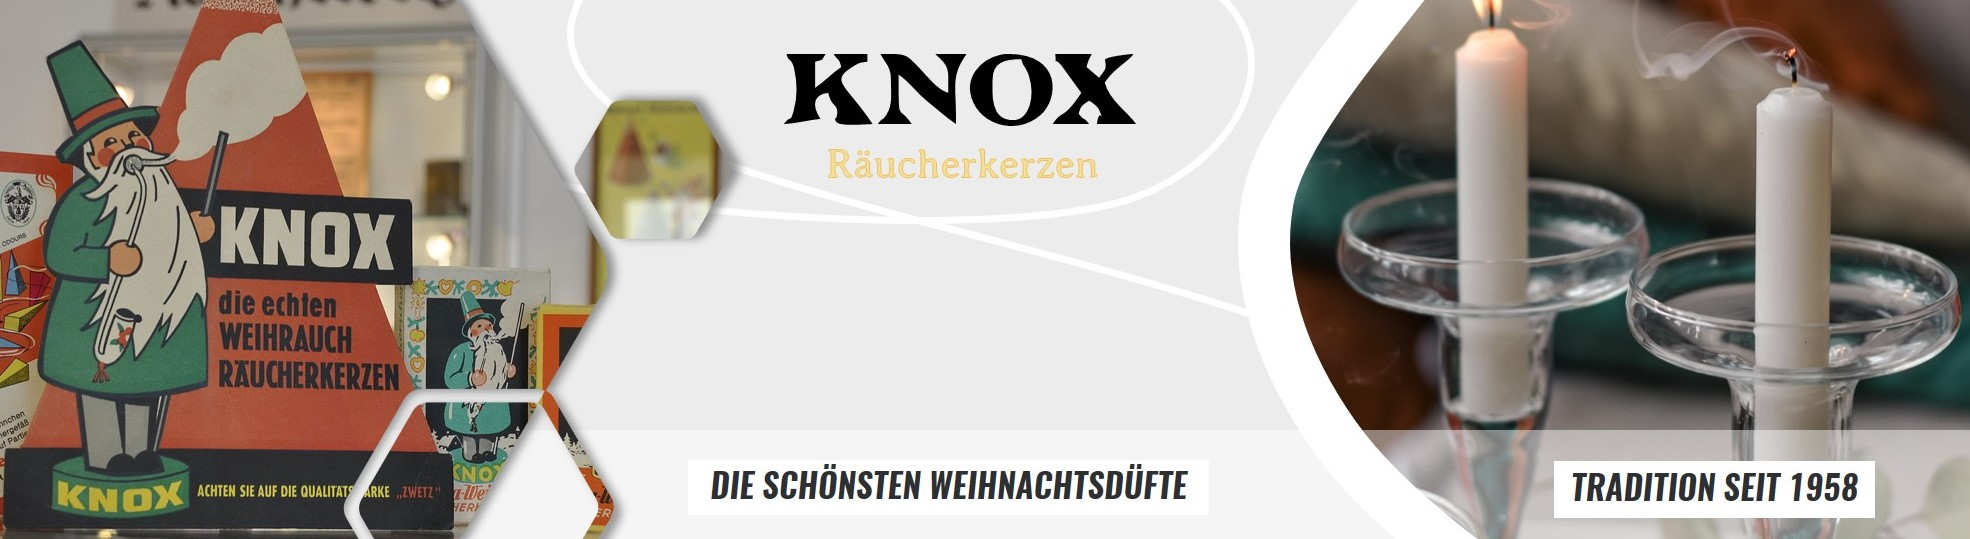 KNOX Produkte online kaufen